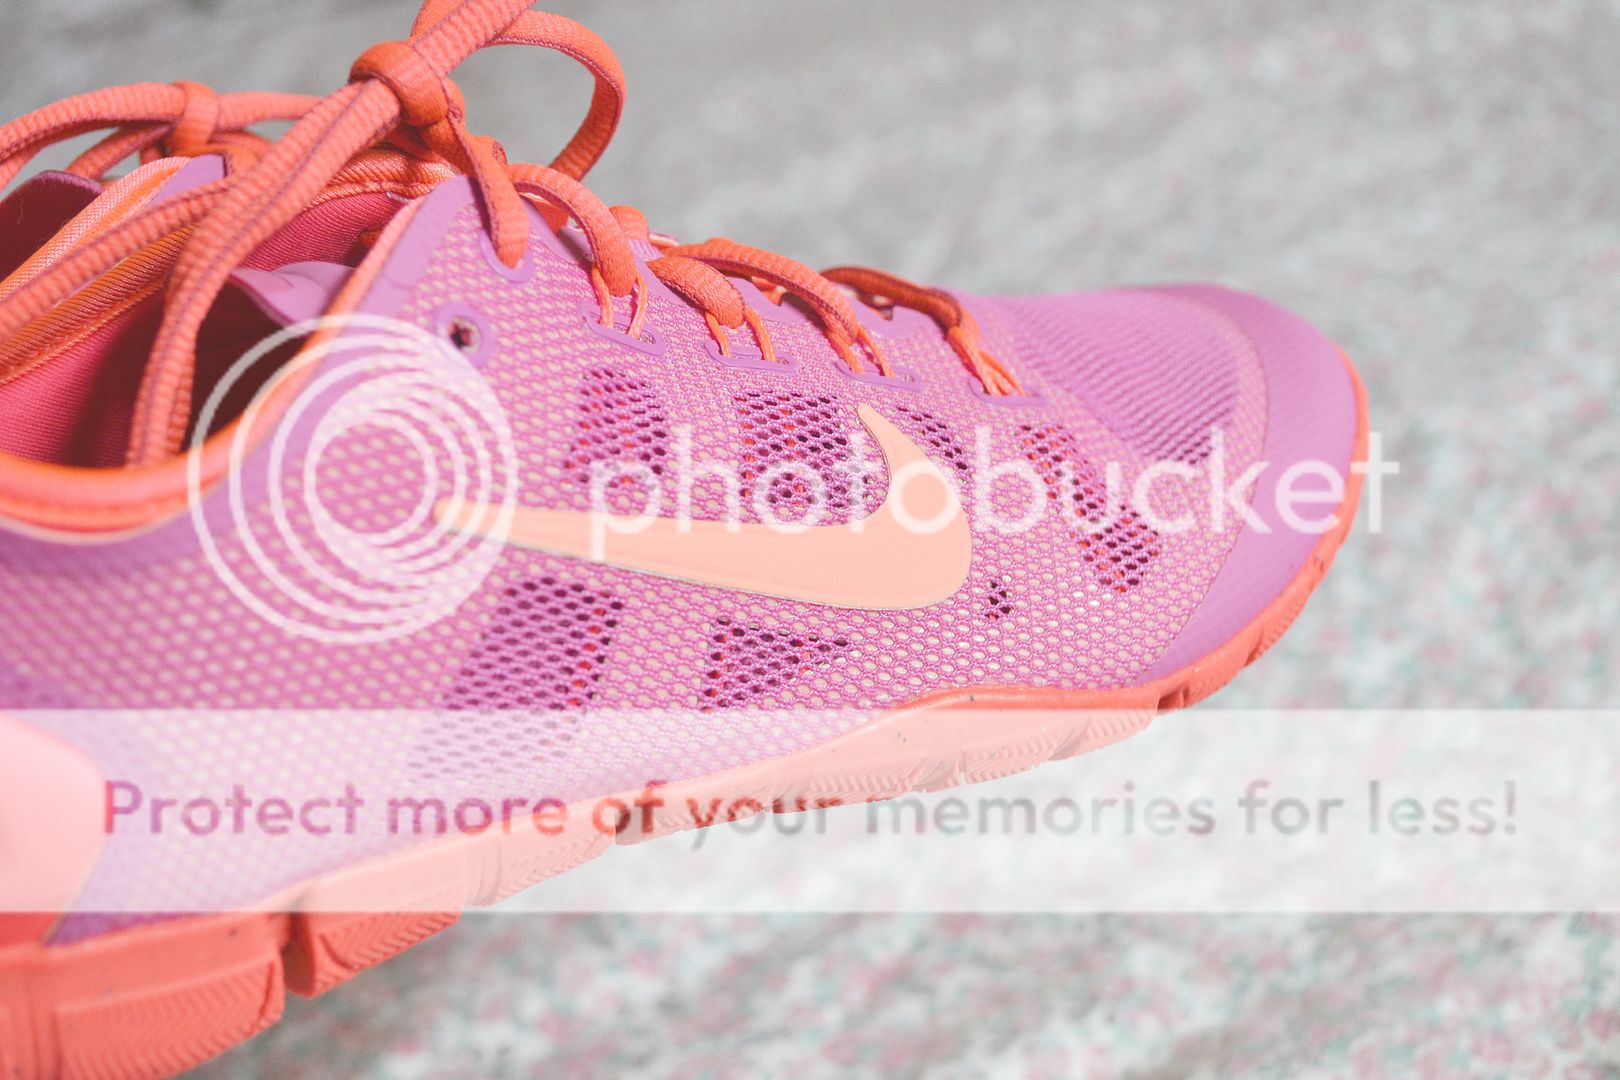 Nike free bionic in pink and purple